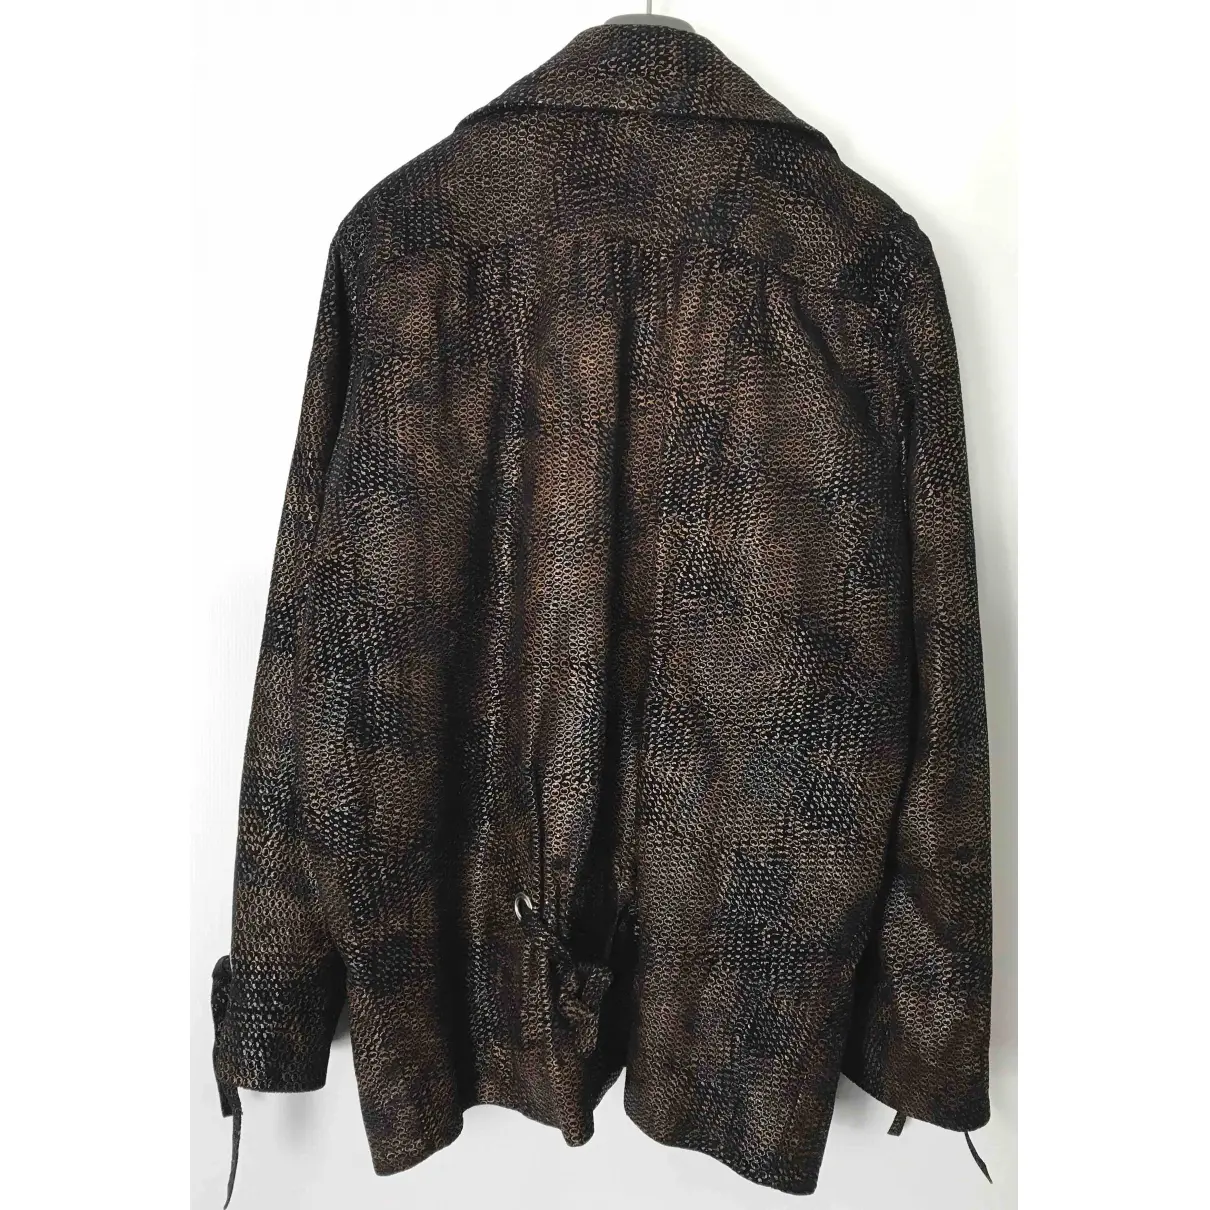 Leather biker jacket Dior - Vintage